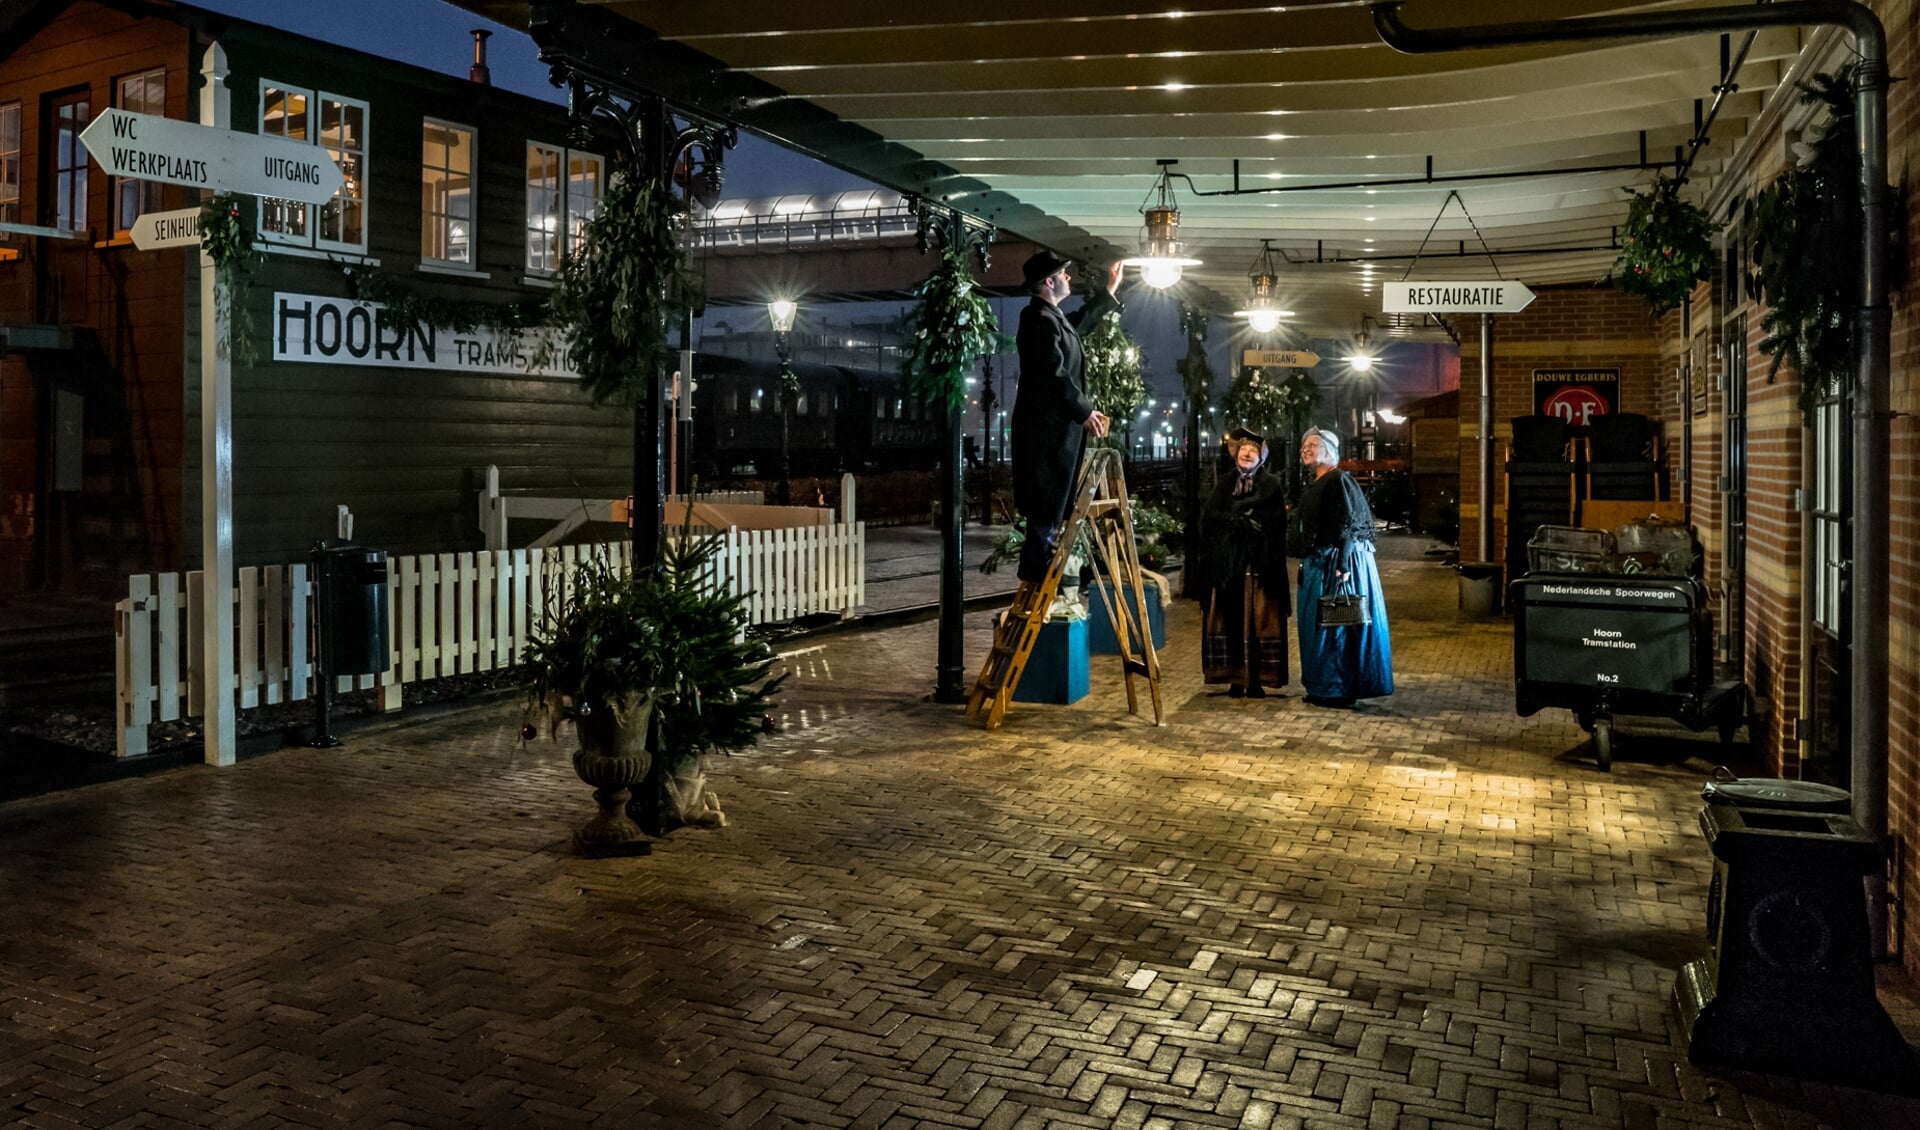 Het stationsplein in Hoorn is geheel voorzien van historische gaslantaarns.